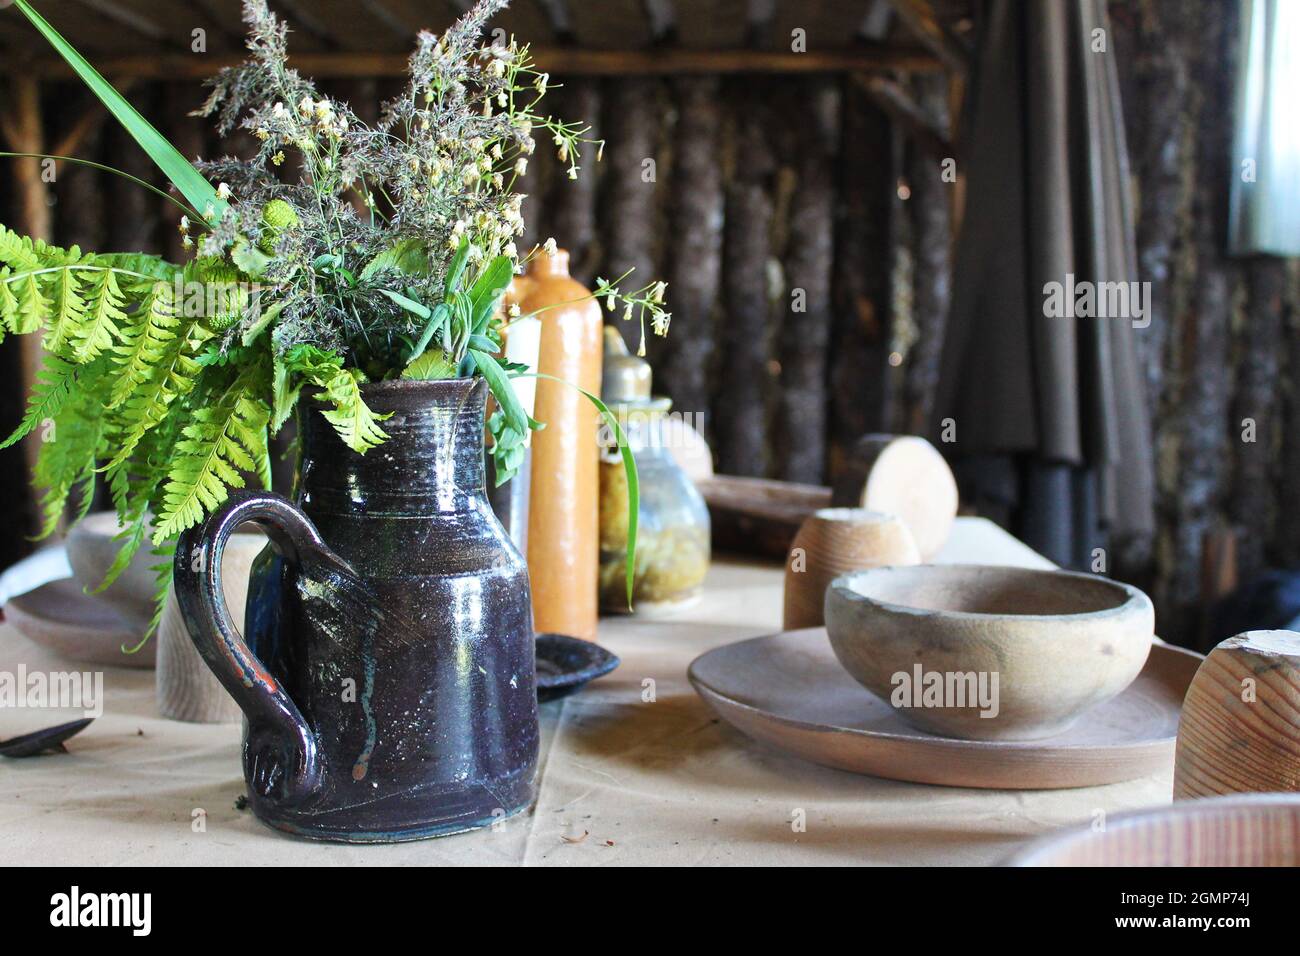 Primo piano di una caraffa in ceramica con fiori selvatici, su un tavolo con vecchio stoviglie in legno, all'interno di una cabina di tronchi. Foto Stock